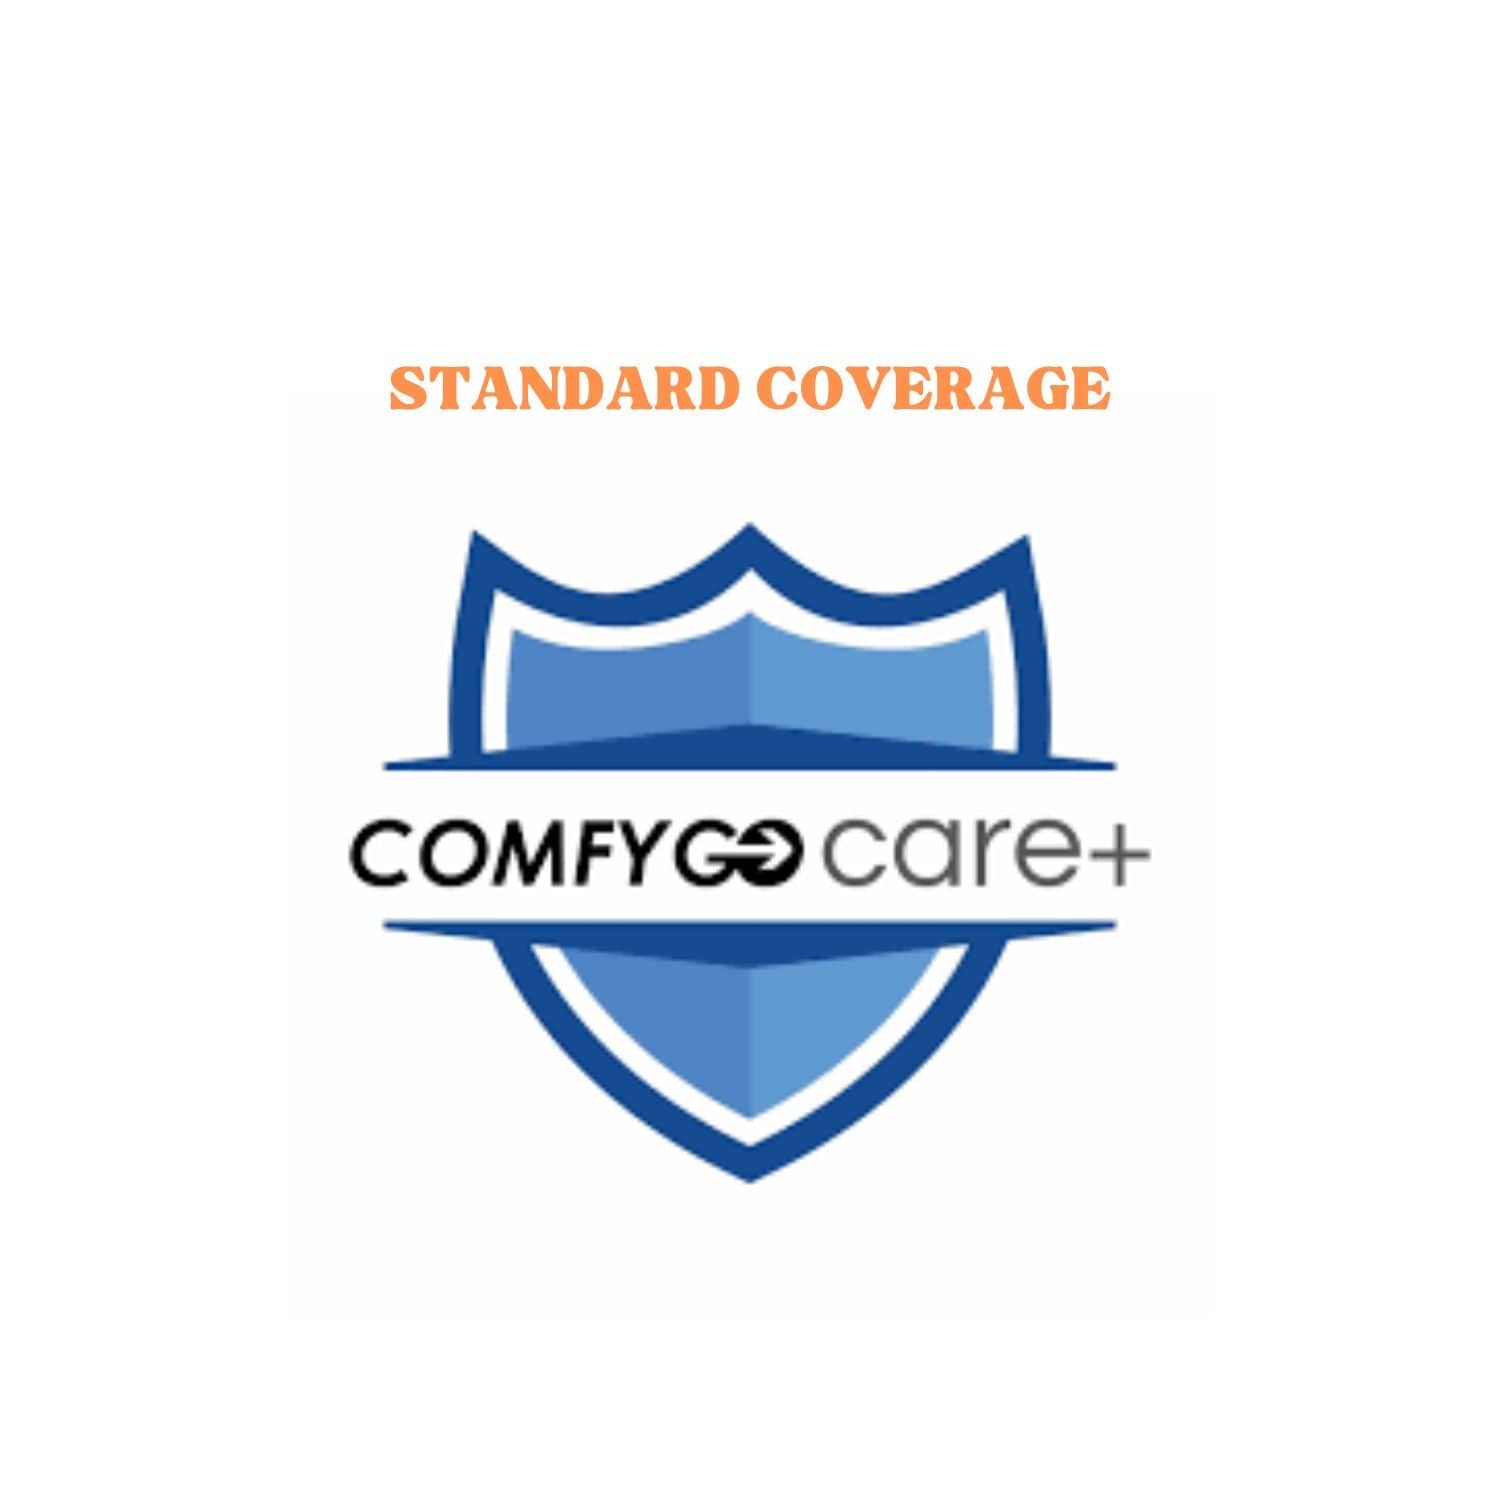 COMFYGO No Extra Coverage ComfyGo Protection Plan